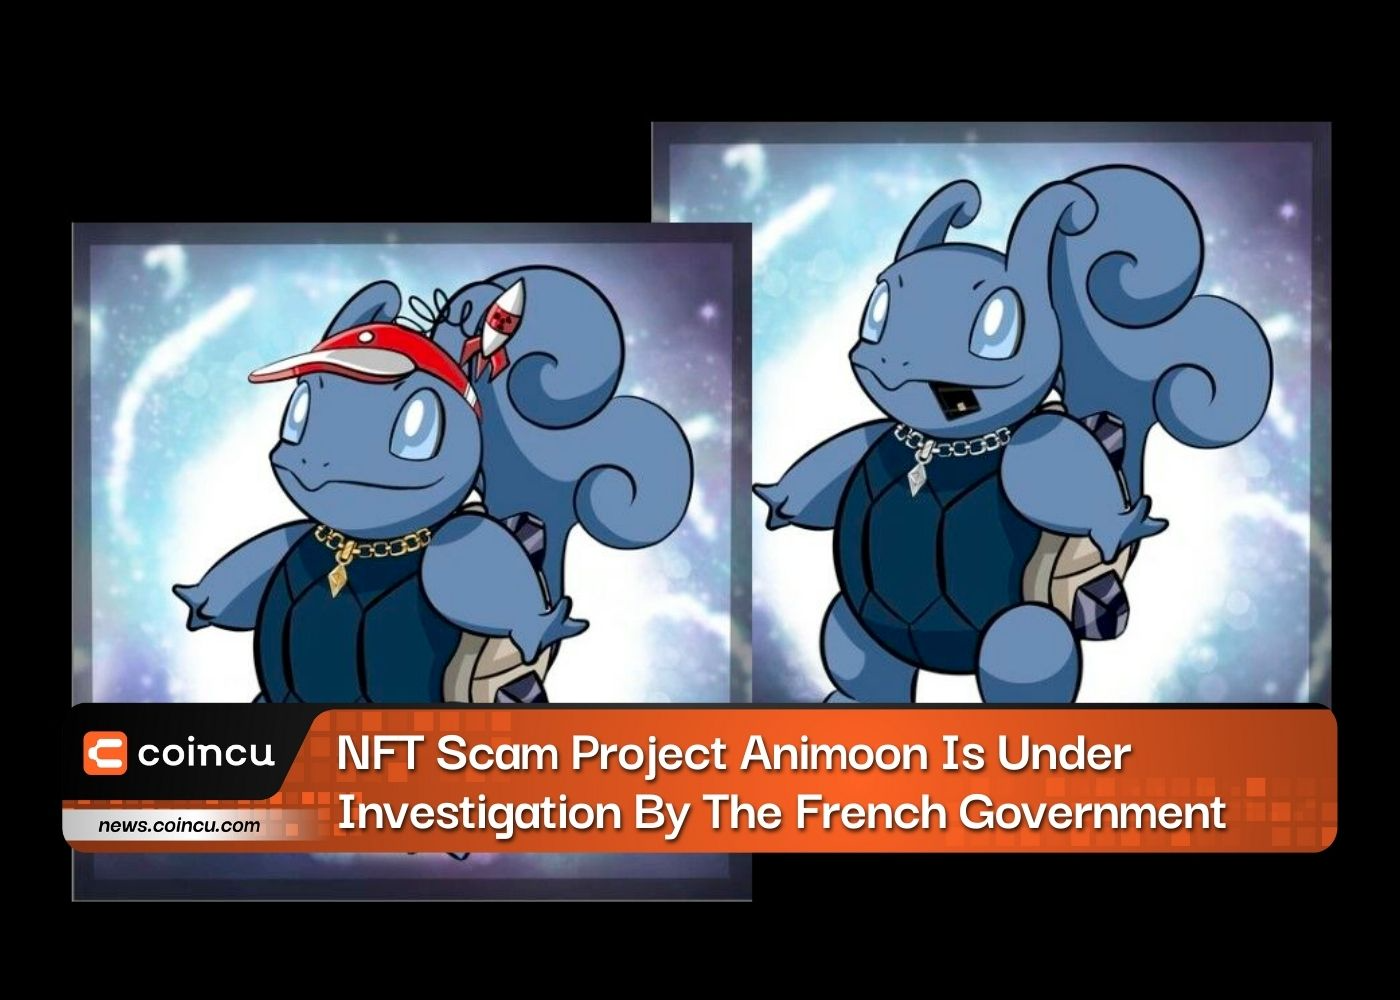 El proyecto de estafa NFT Animoon está siendo investigado por el gobierno francés